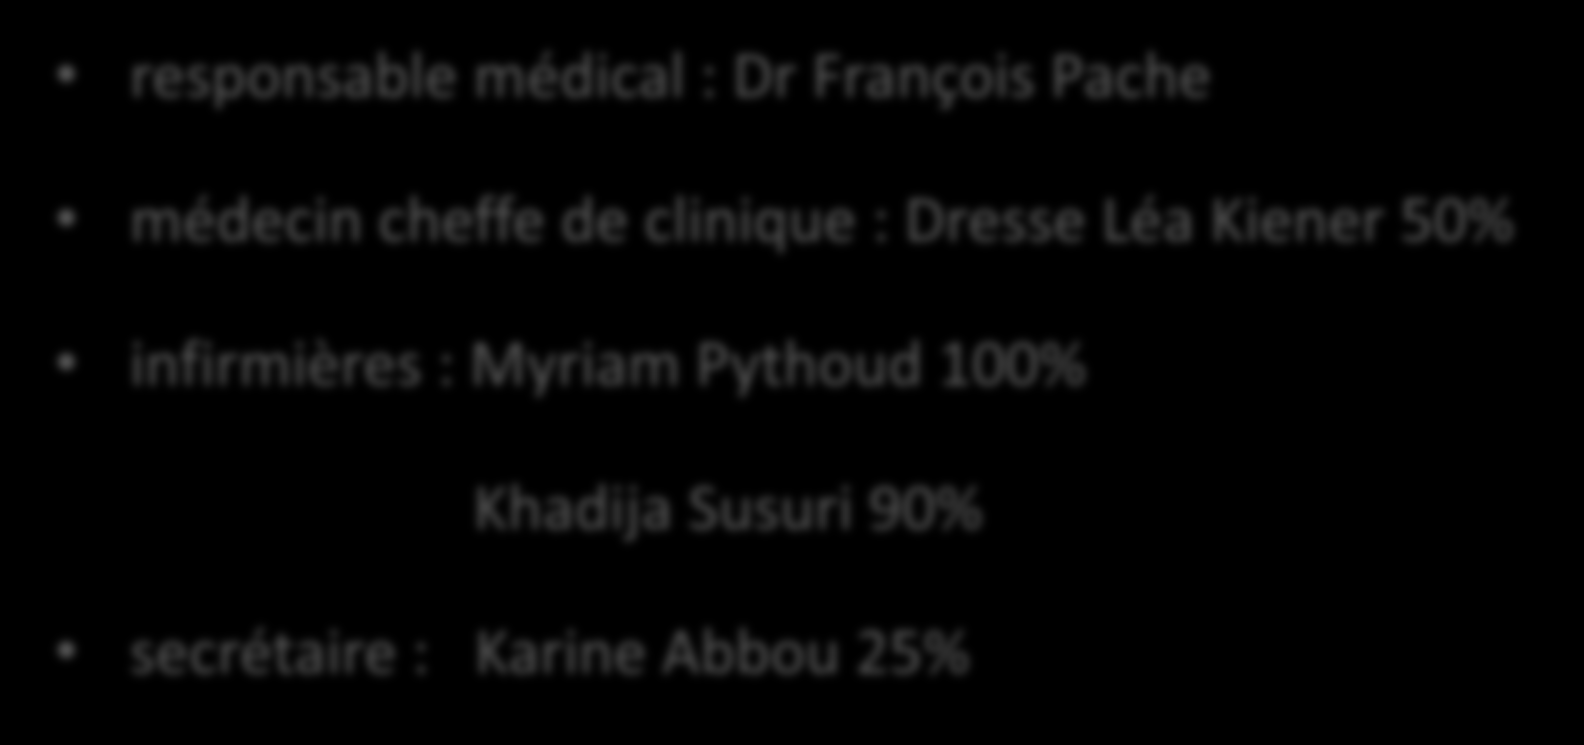 Equipe de psychiatrie mobile et d intervention précoce responsable médical : Dr François Pache médecin cheffe de